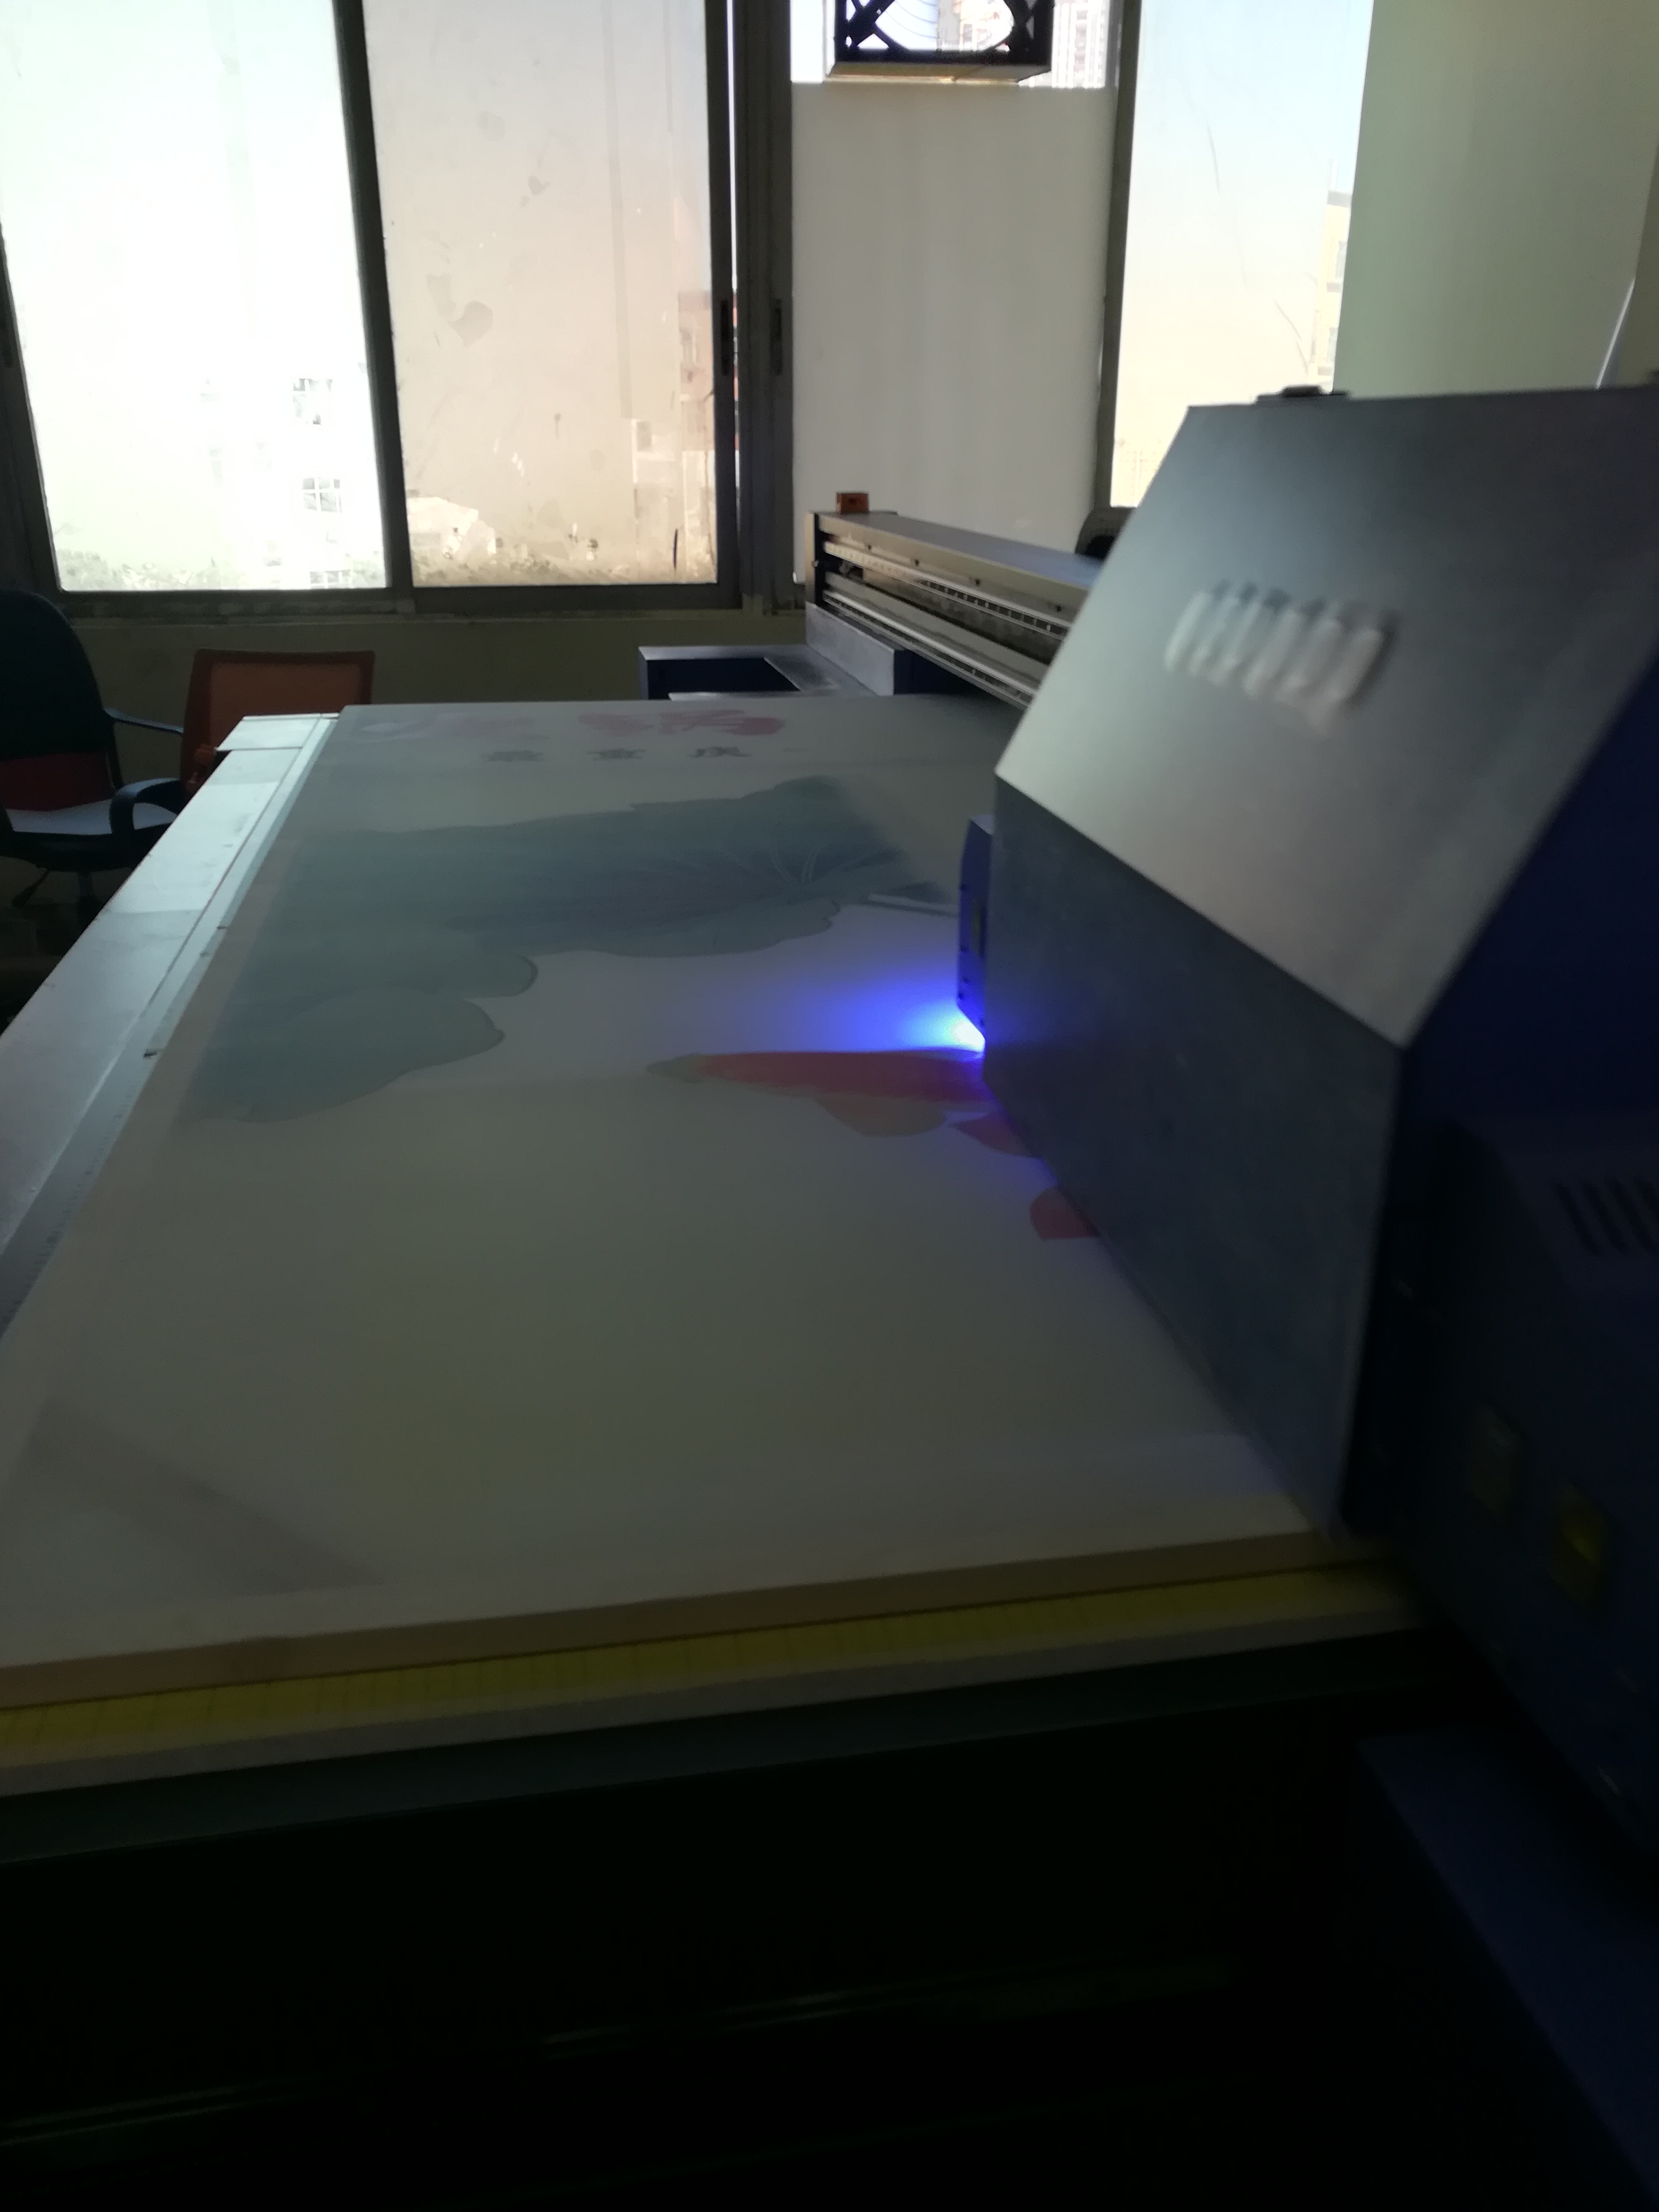 深圳专营高品质合资UV平板打印机